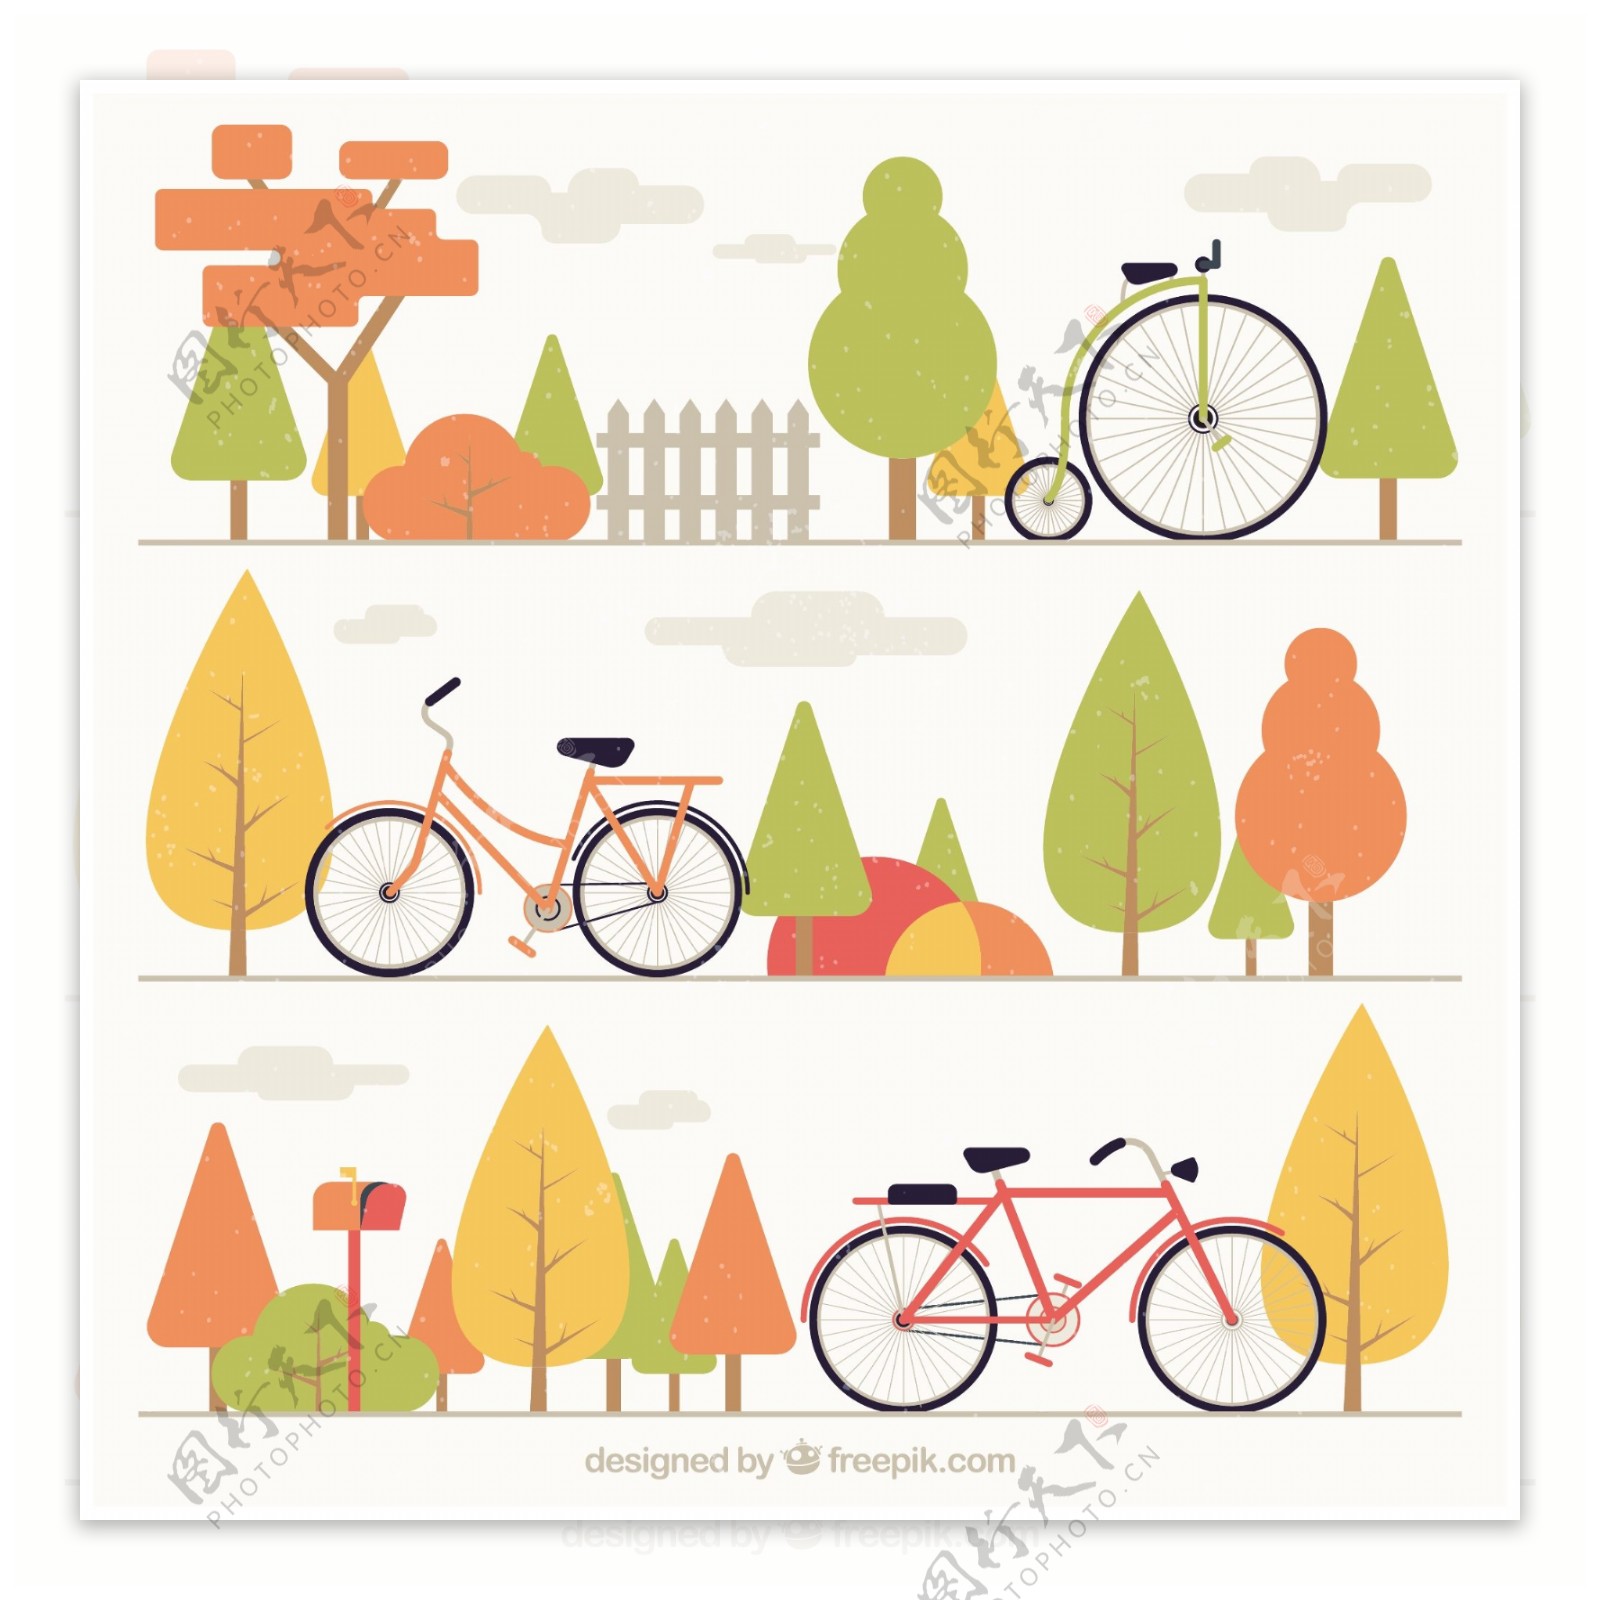 骑自行车和树的集合